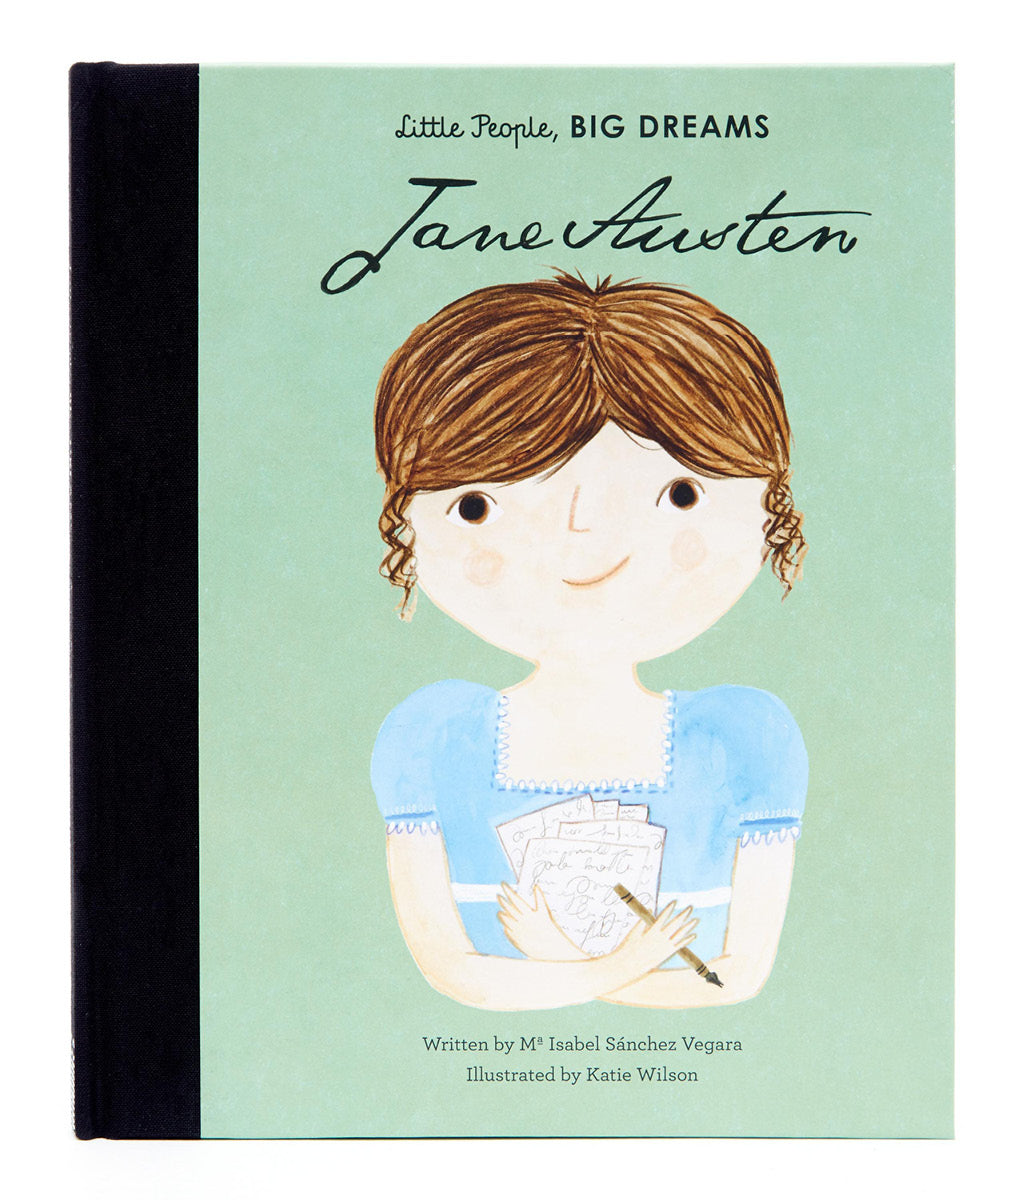 Jane Austen by Maria Isabel Sanchez Vegara